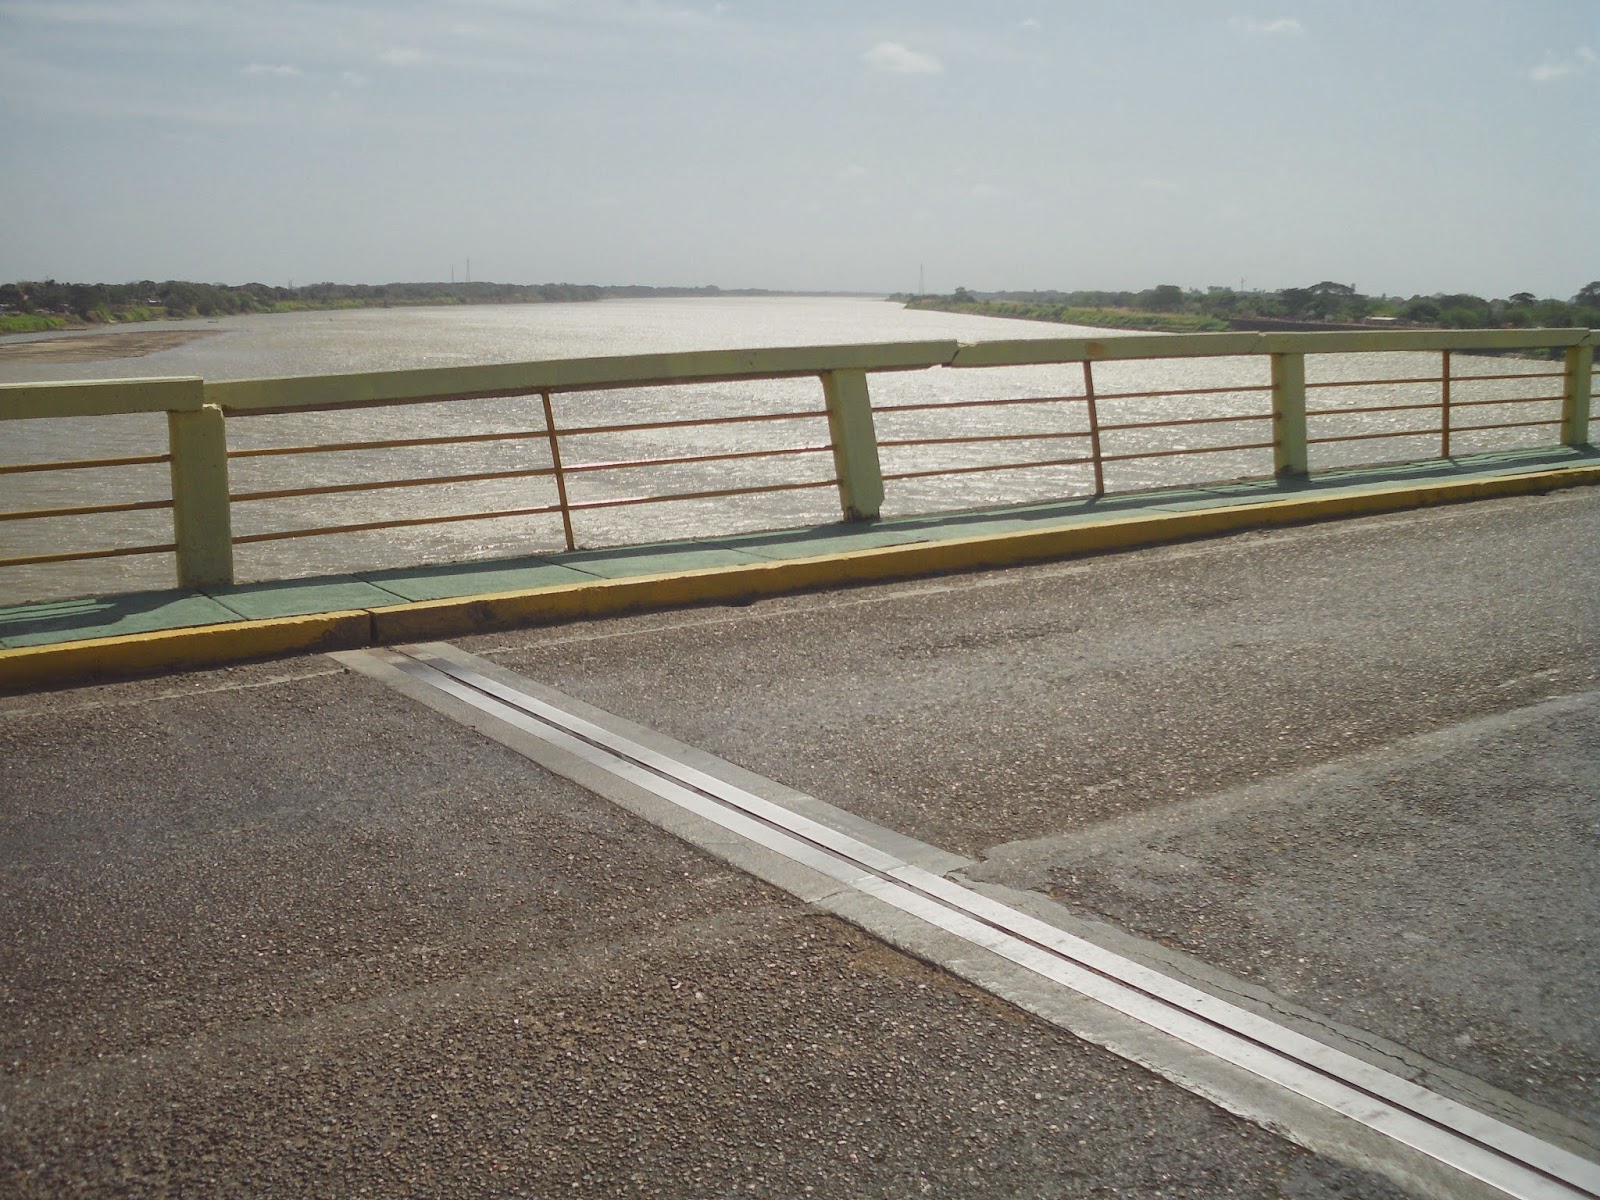 Video: Aceras y barandas del Puente María Nieves deterioradas y en mal estado en Apure